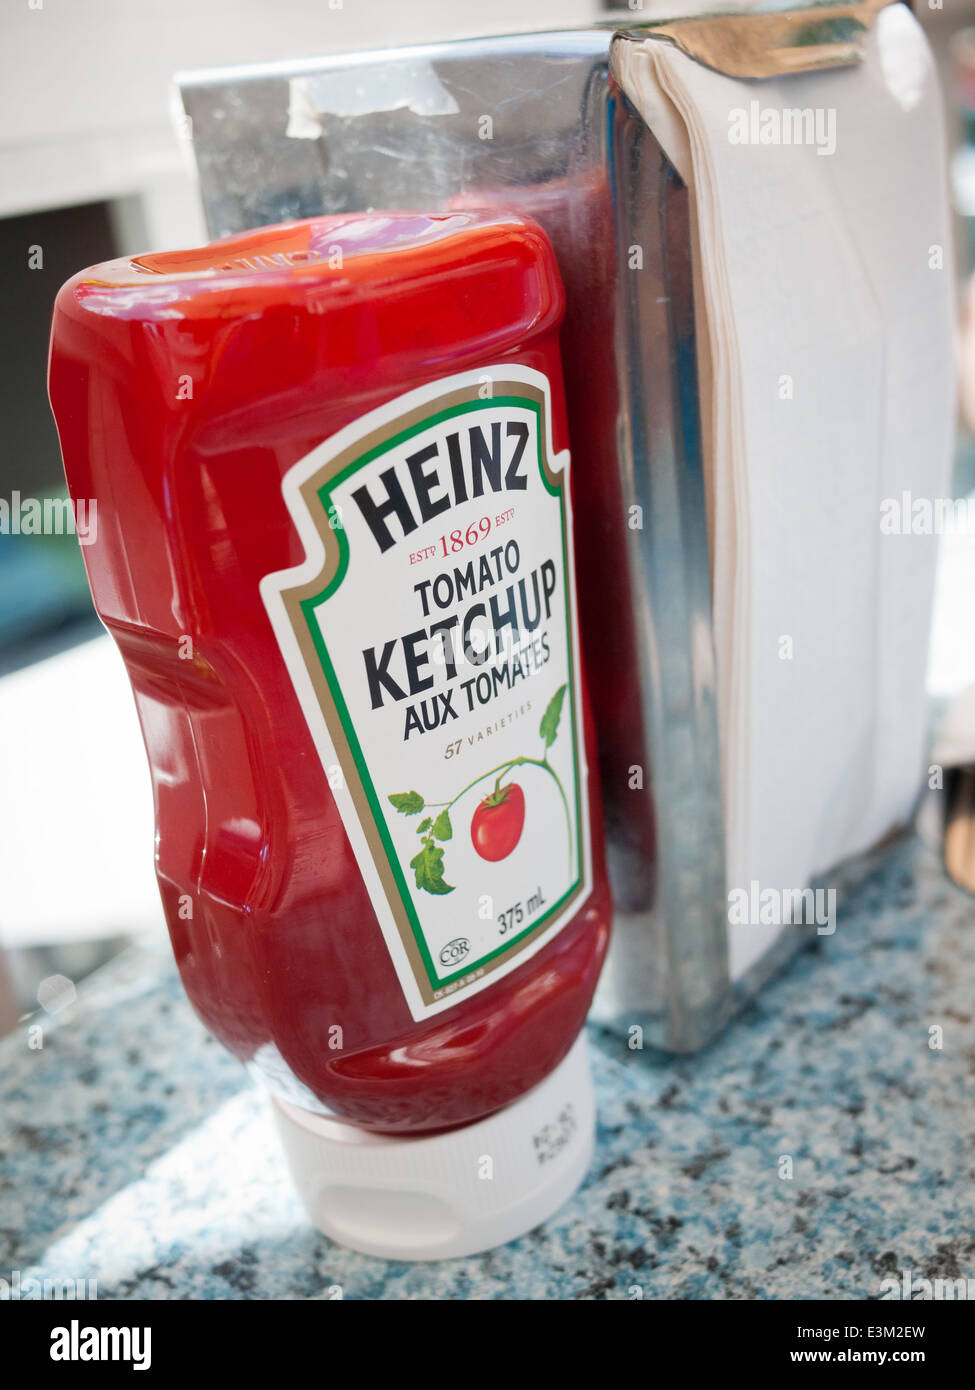 Boca abajo una botella de ketchup Heinz. Canadian envases con etiquetas en inglés y francés se muestra. Foto de stock